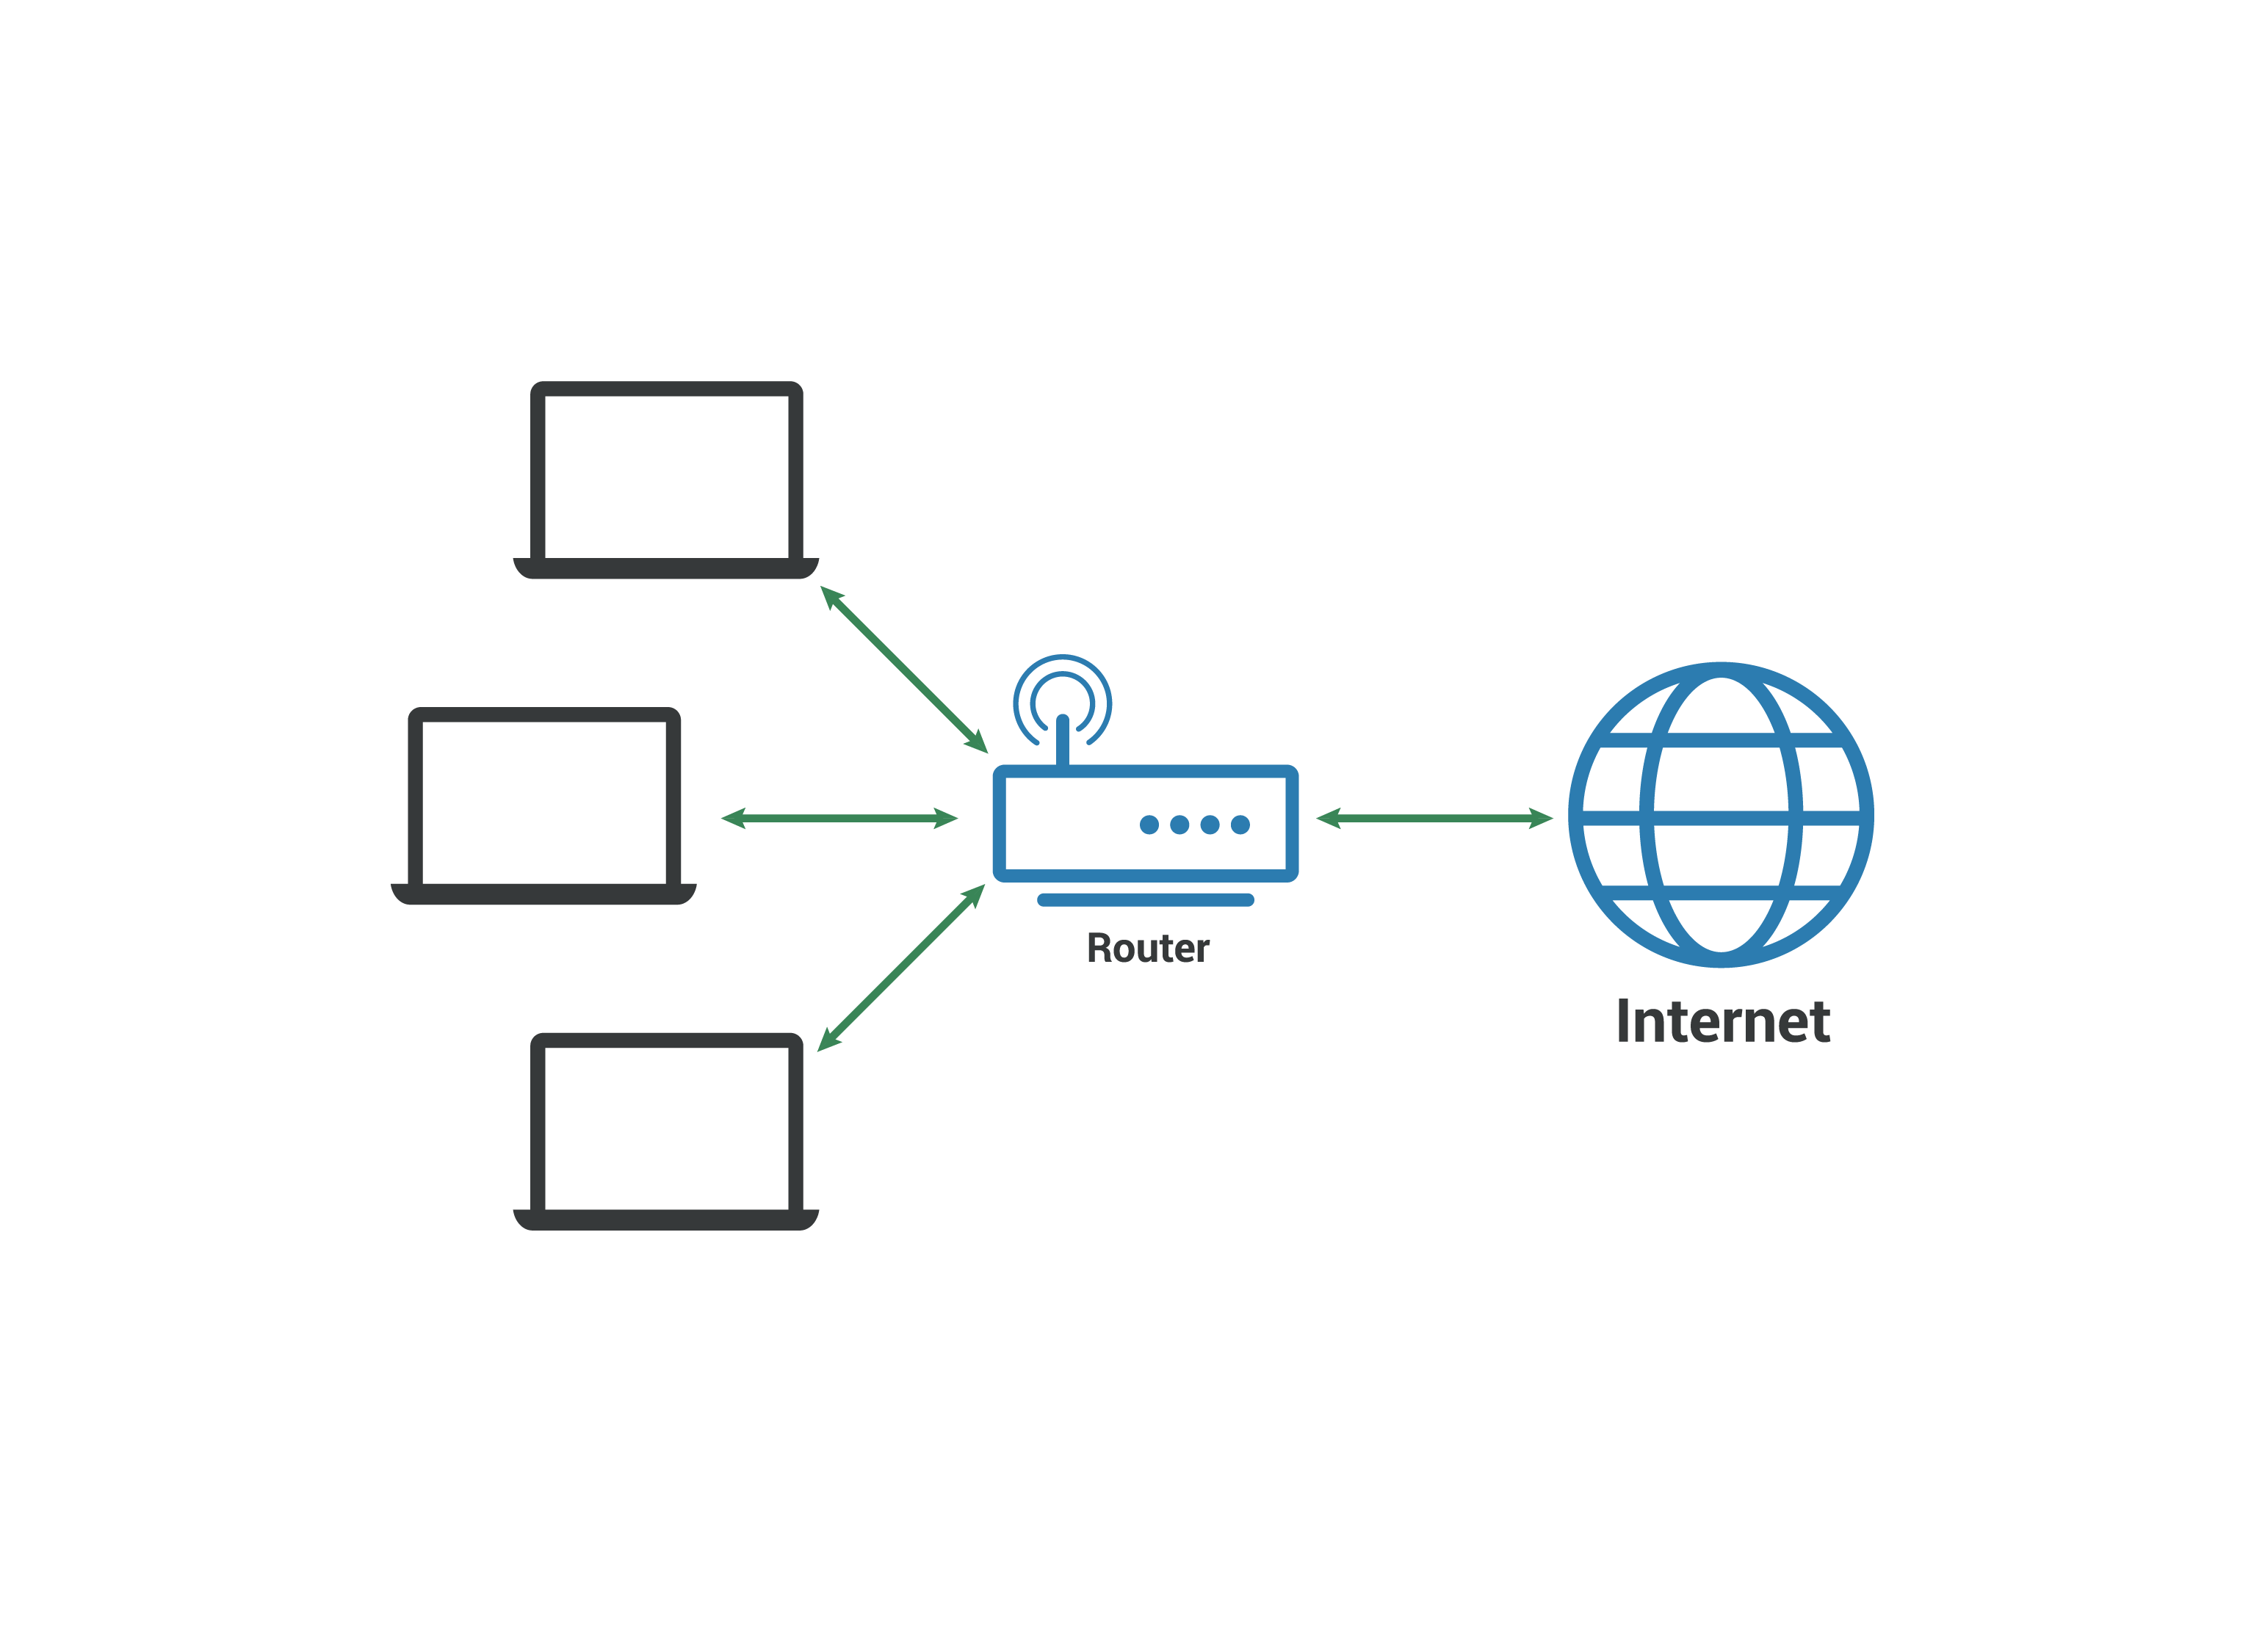 Lokales Netzwerk LAN – Computer verbinden sich mit einem Router, der eine Verbindung zum Internet herstellt